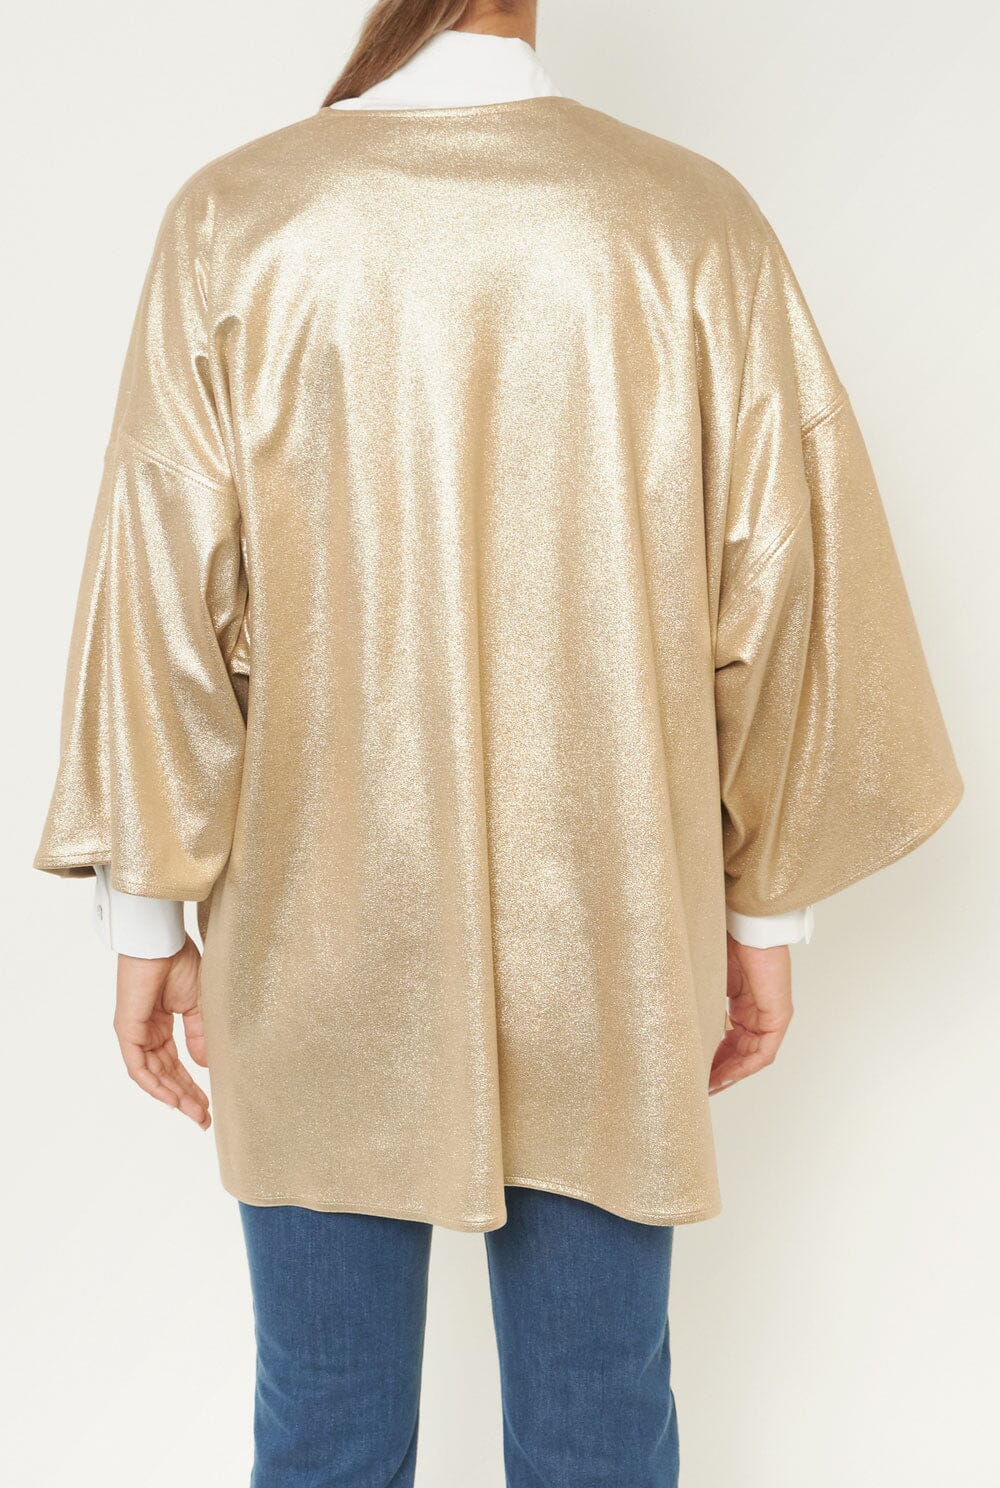 Abrigo Greta Reversible Beige Oro Coats Duyos 